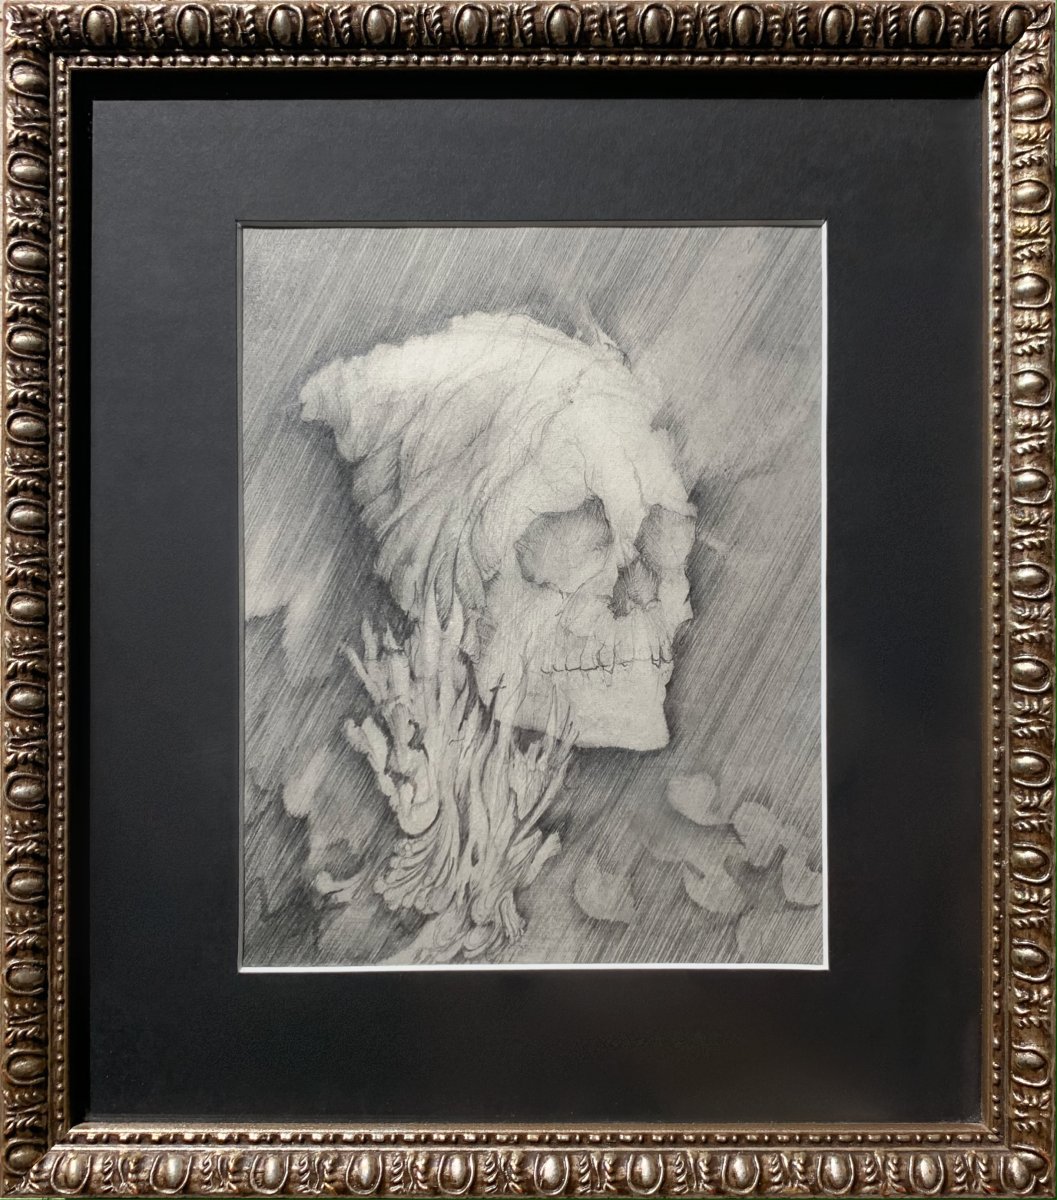 Frédéric Heydt - Vanity: Skull In Flames, Pencil Drawing C. 1960 - Memento Mori